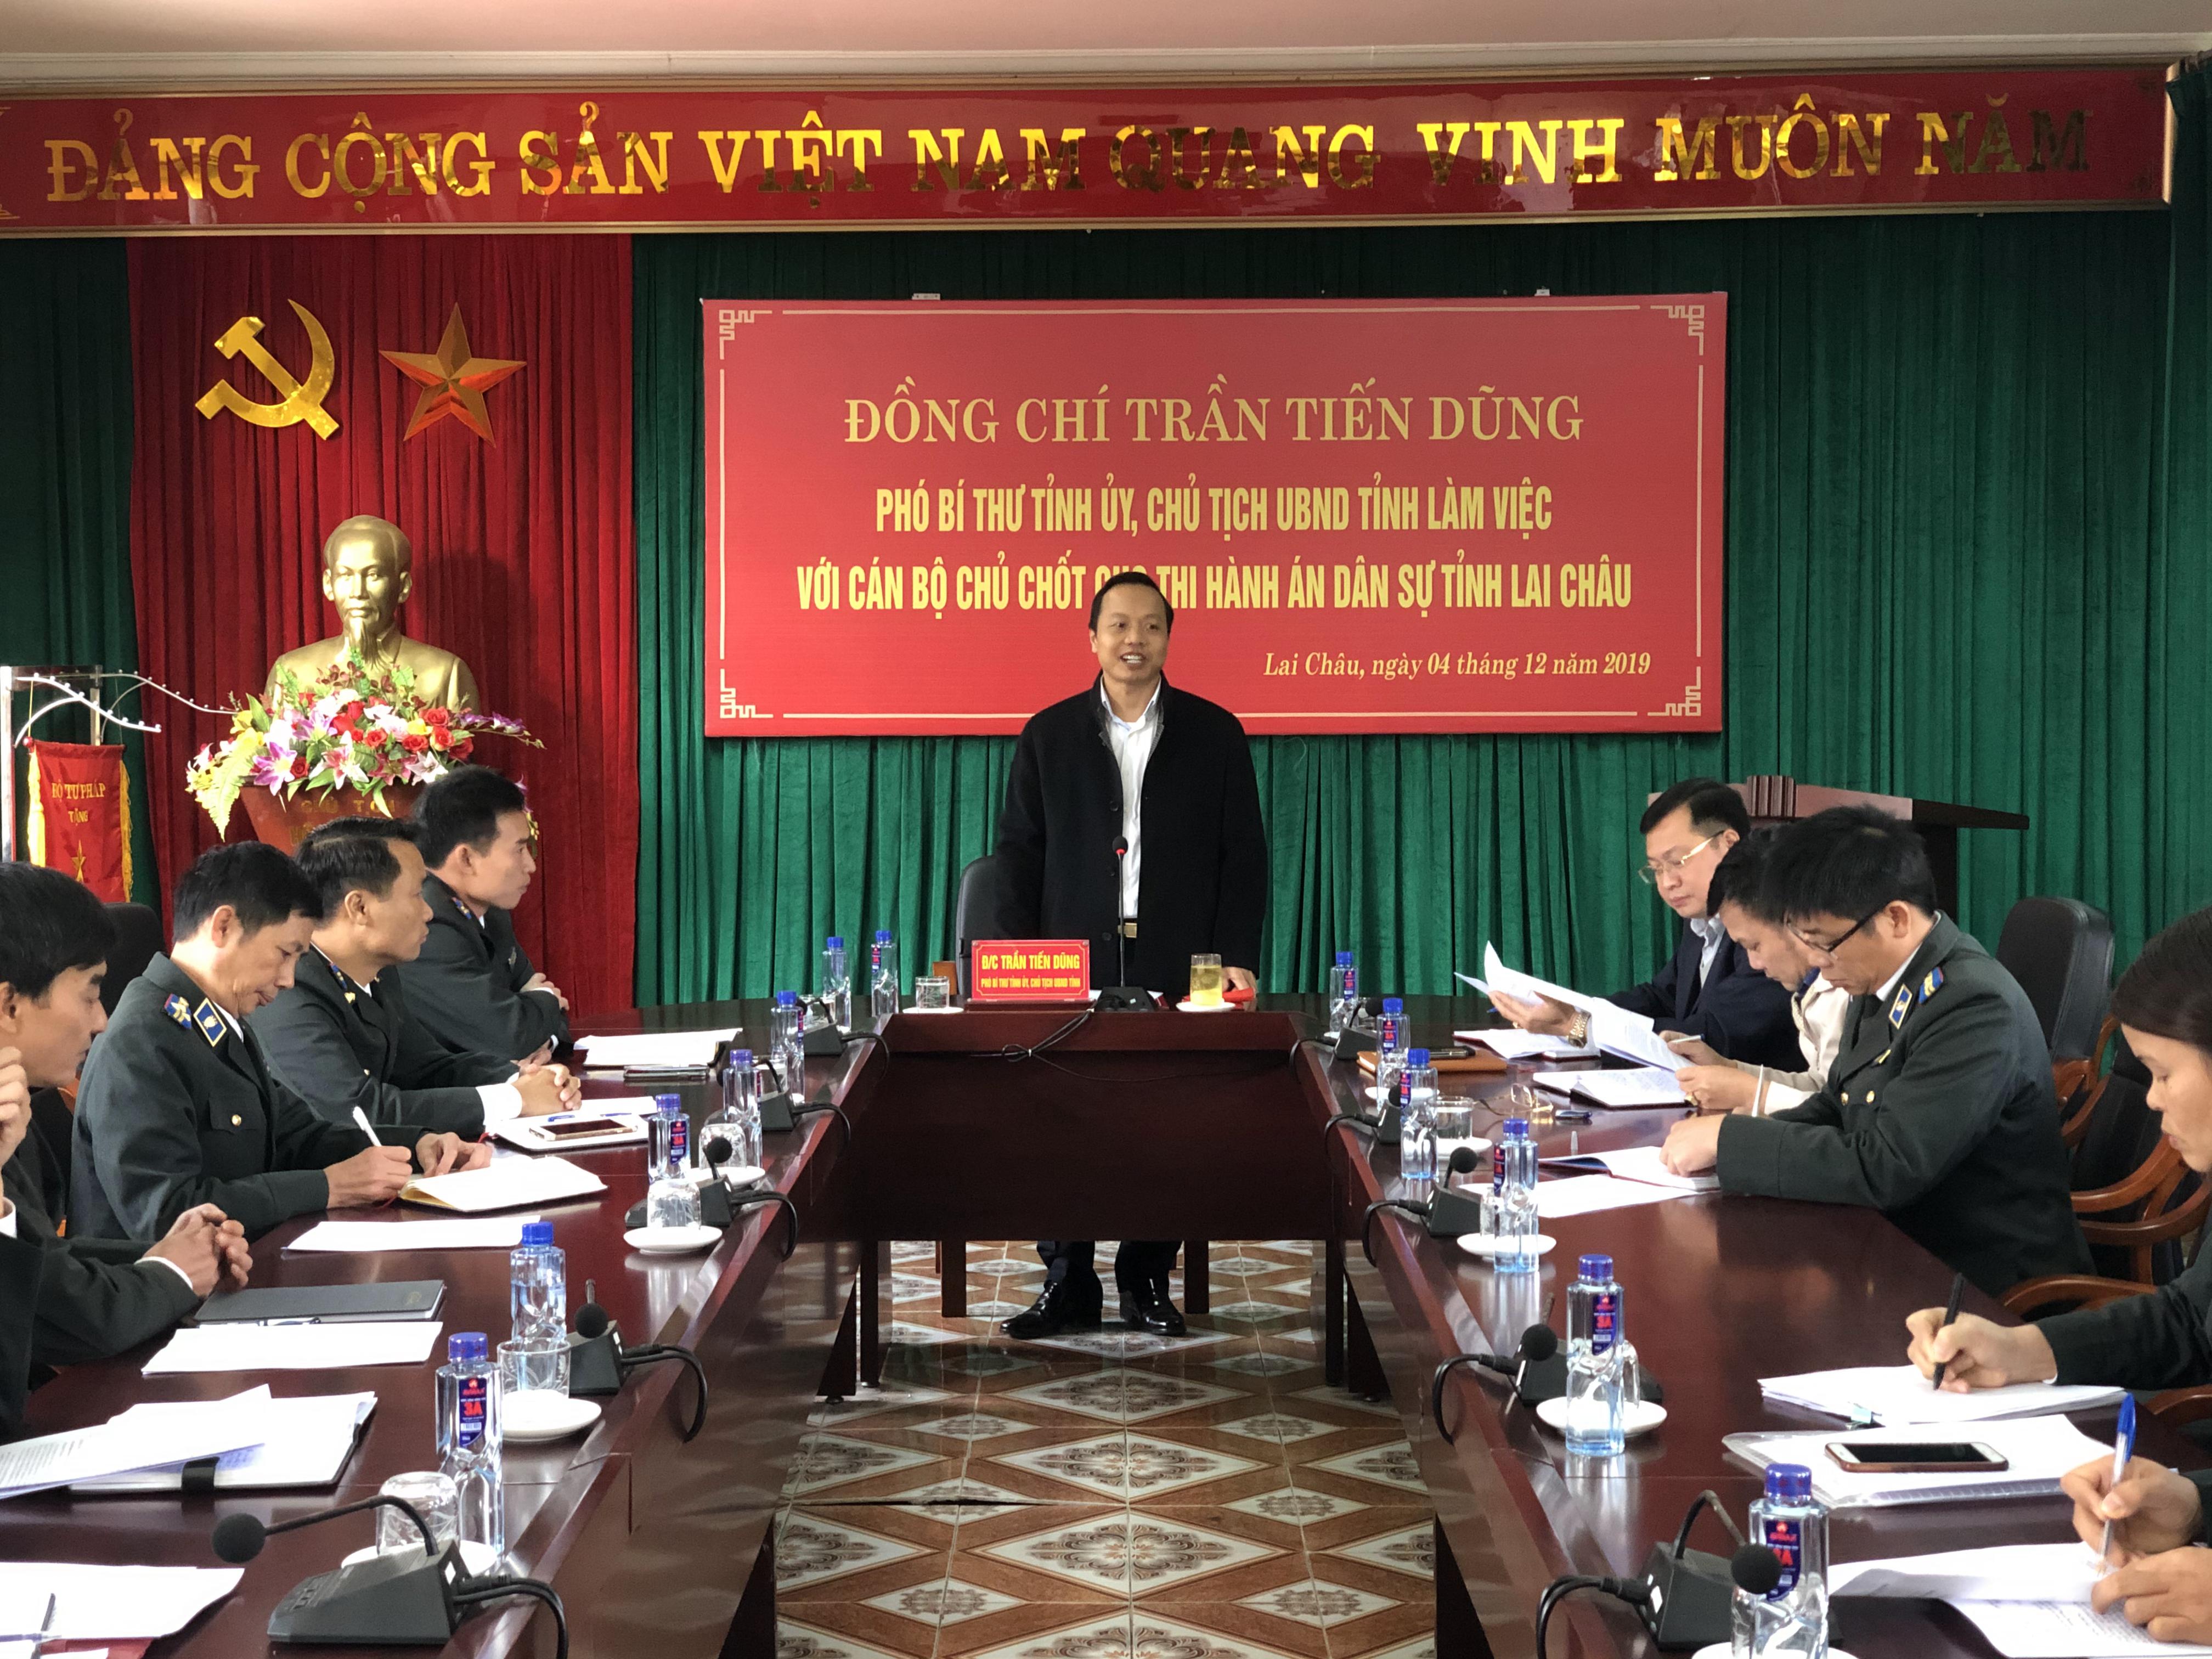 Đồng chí Trần Tiến Dũng Phó Bí thư Tỉnh ủy - Chủ tịch UBND tỉnh Lai Châu làm việc với Cục Thi hành án dân sự tỉnh Lai Châu